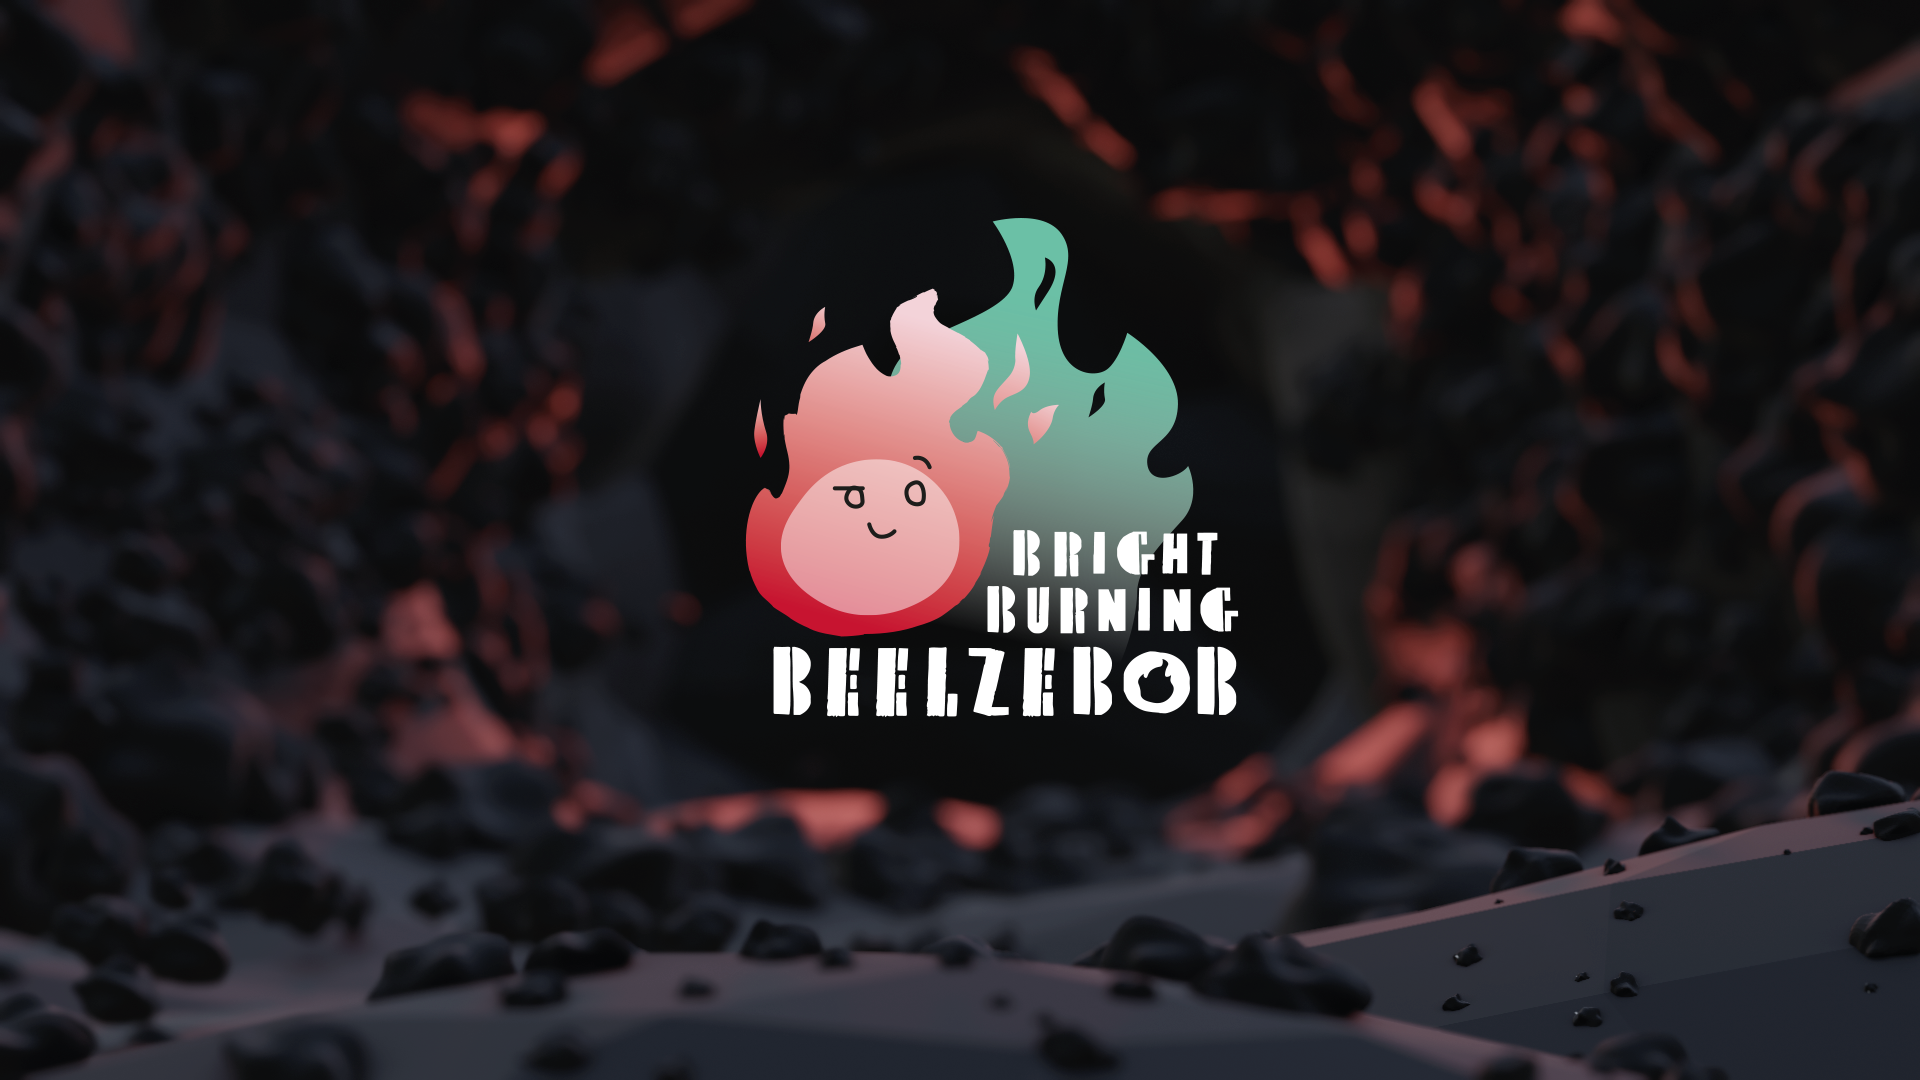 Bright Burning Beelzebob - [BBB]